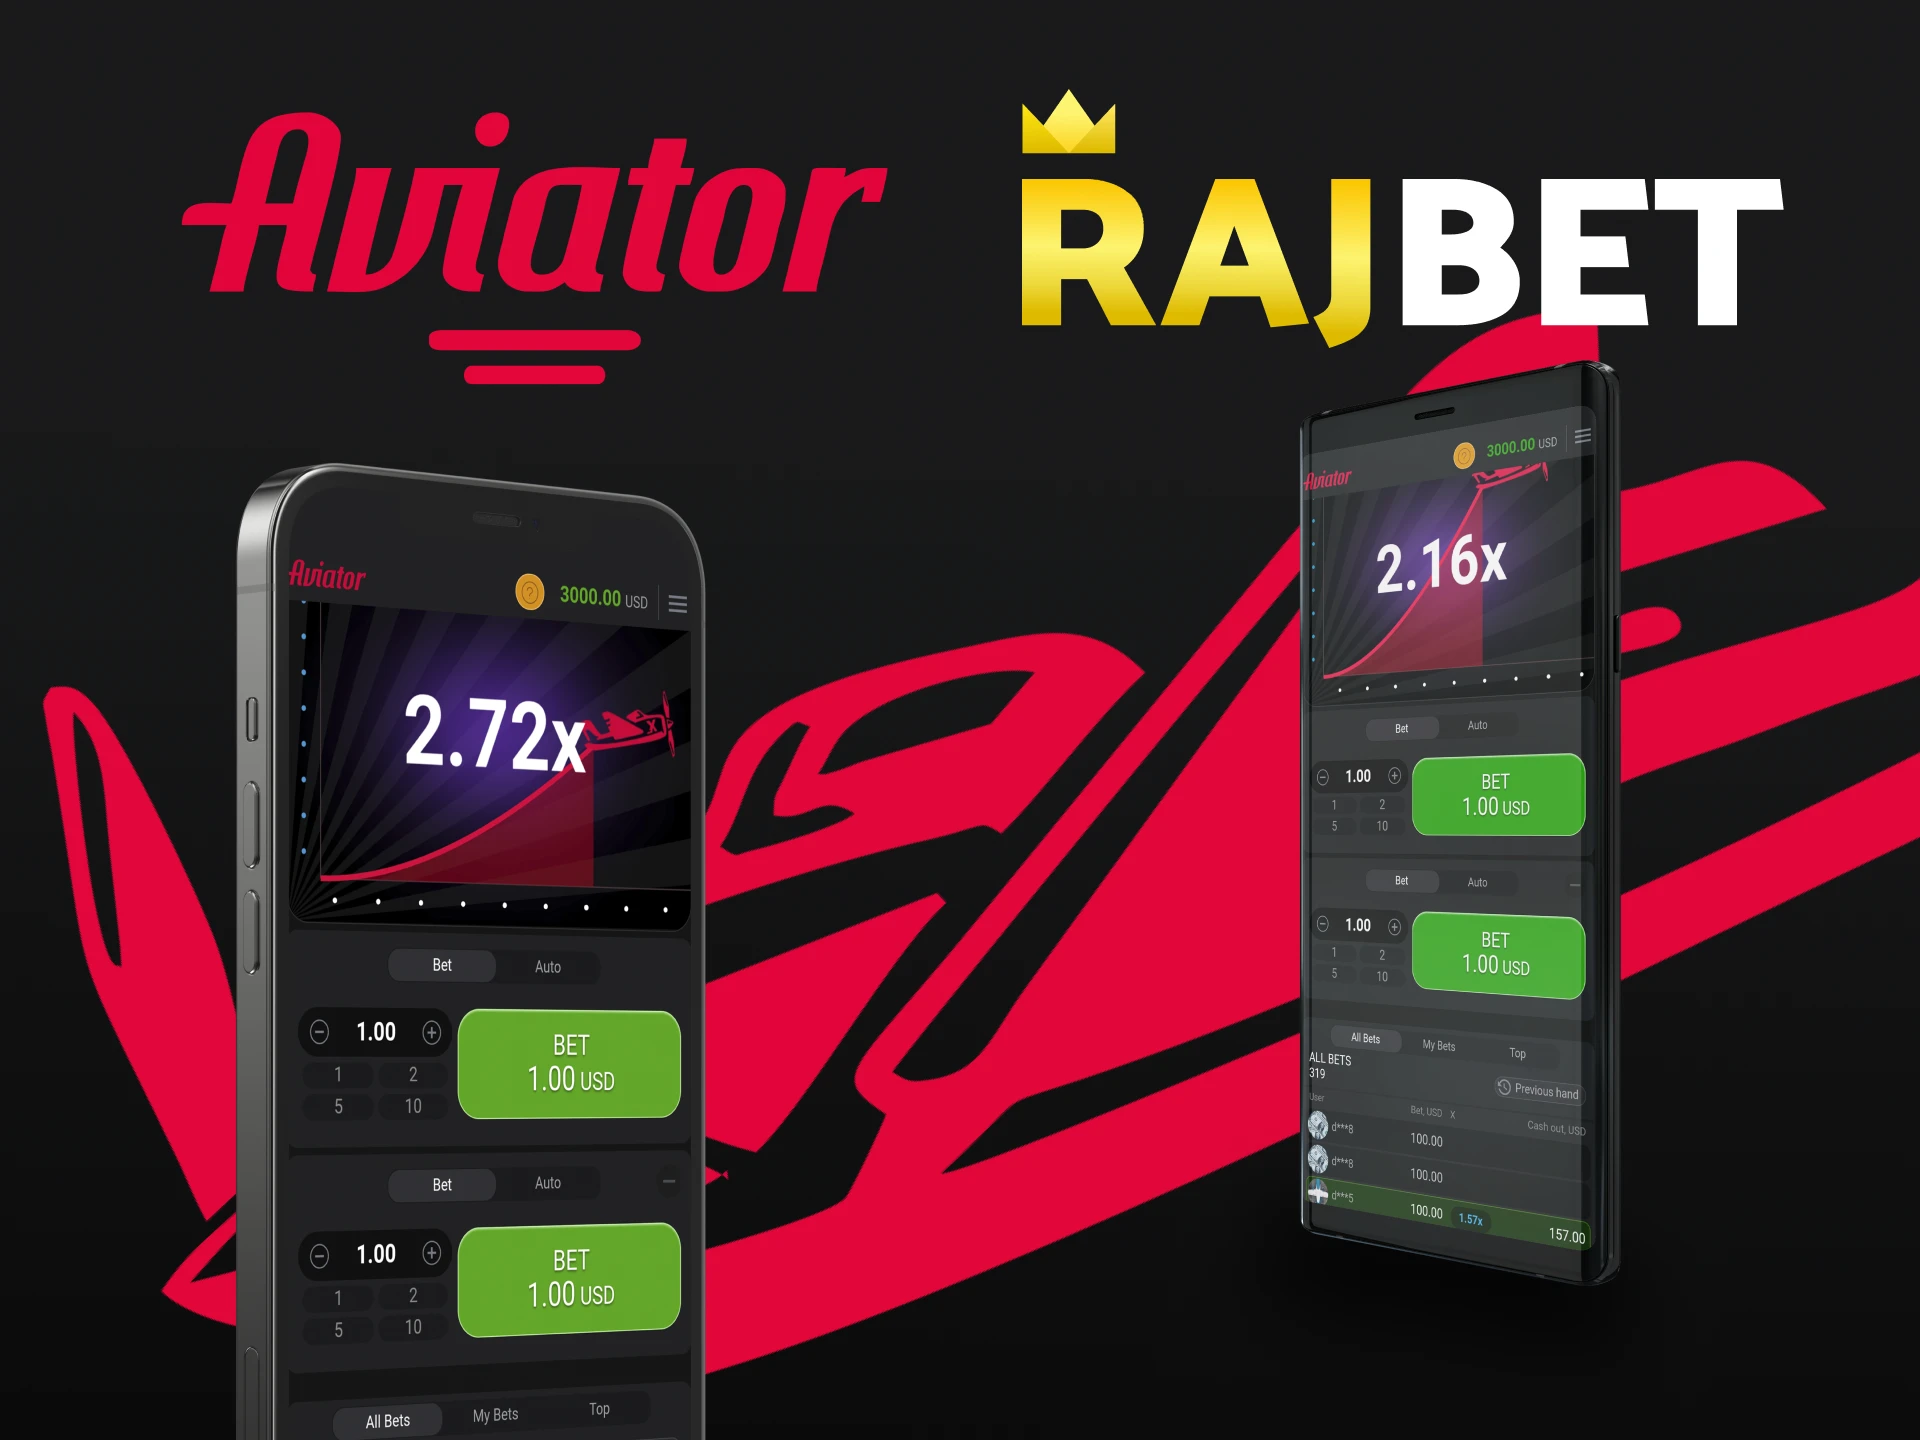 Descubra qual dispositivo é melhor para jogar Aviator através do aplicativo Rajbet.